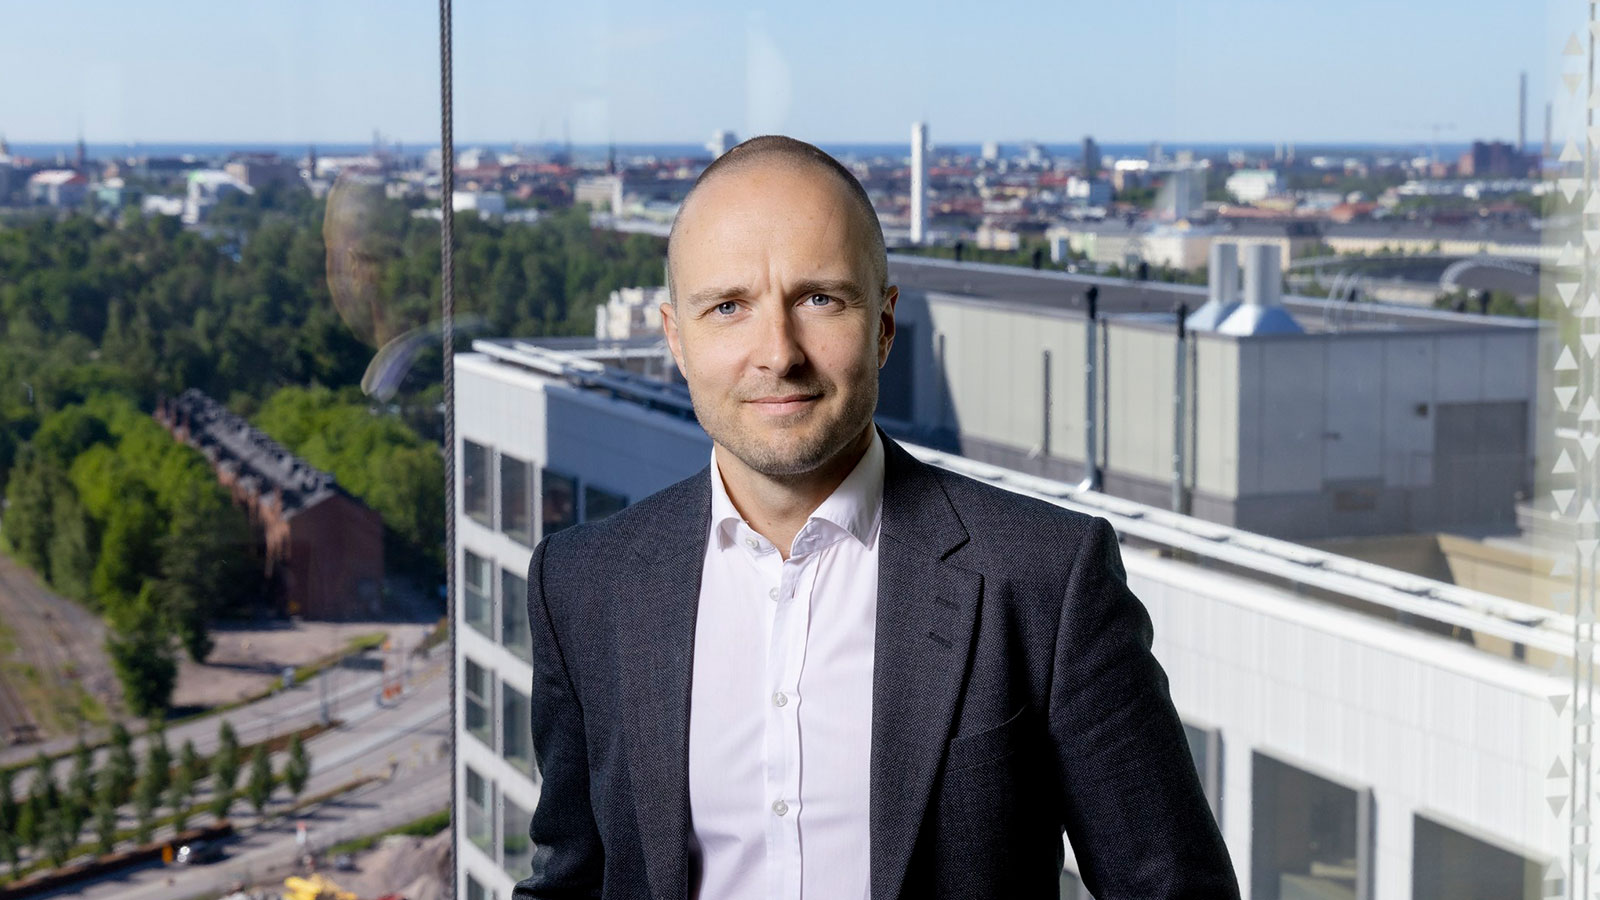 Fonectan tuote- ja teknologiajohtaja, Markus Vuorinen